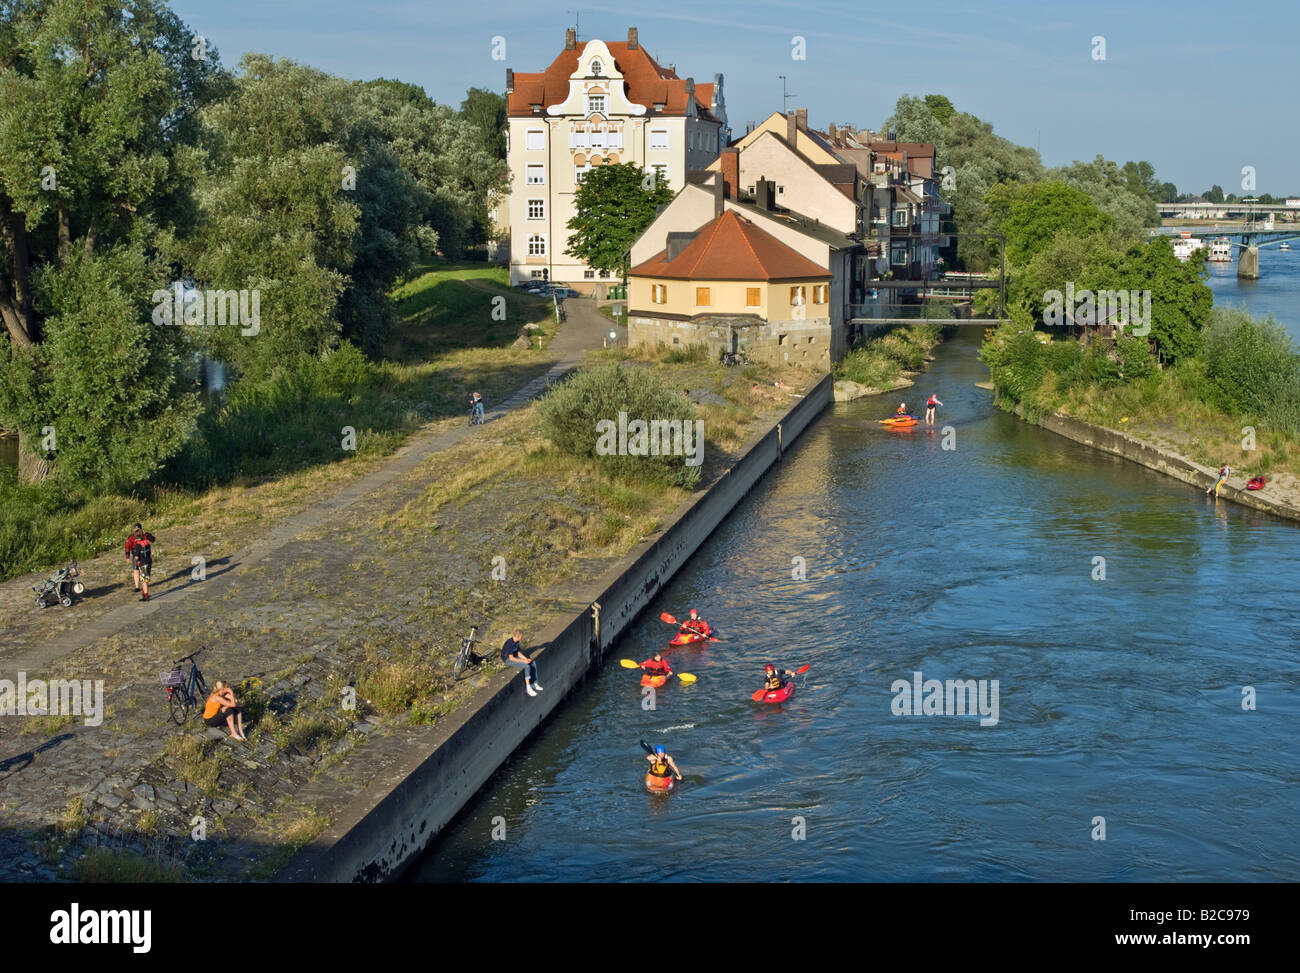 Kanuten Paddler auf der Donau bei REGENSBURG Flussufern Banken Altstadt Sport Kanu Paddel Mann Frauen Fluss Spaß Wasser w Stockfoto